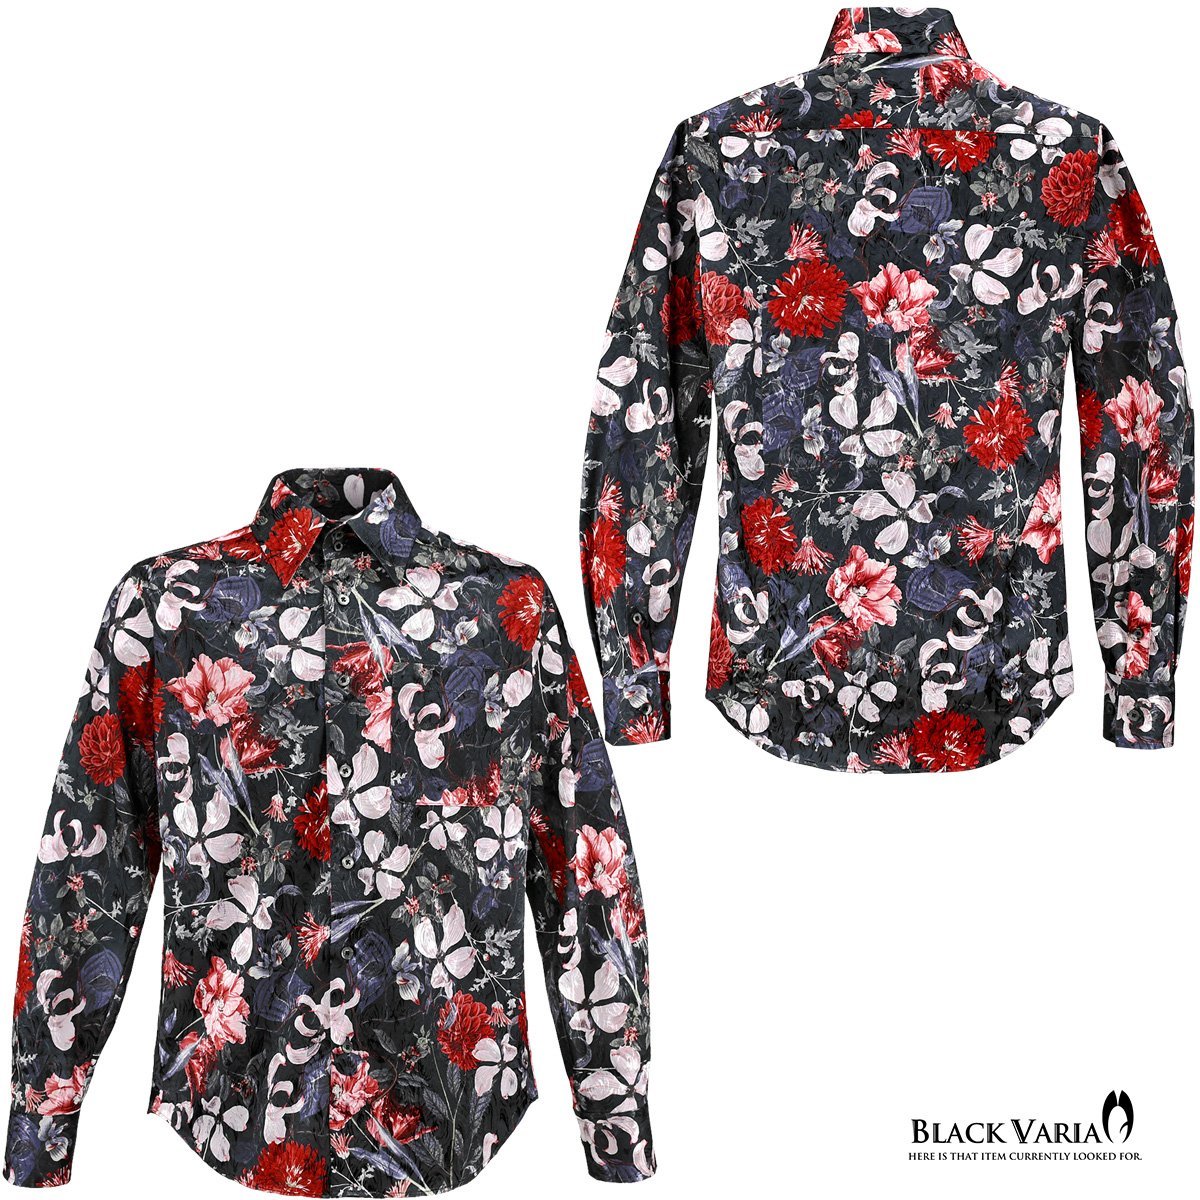 a221250-bk BLACK VARIA ドゥエボットーニ 花柄 レギュラーカラー 薔薇ジャガード サテンドレスシャツ メンズ(ブラック黒レッド赤ピンク) X_画像3